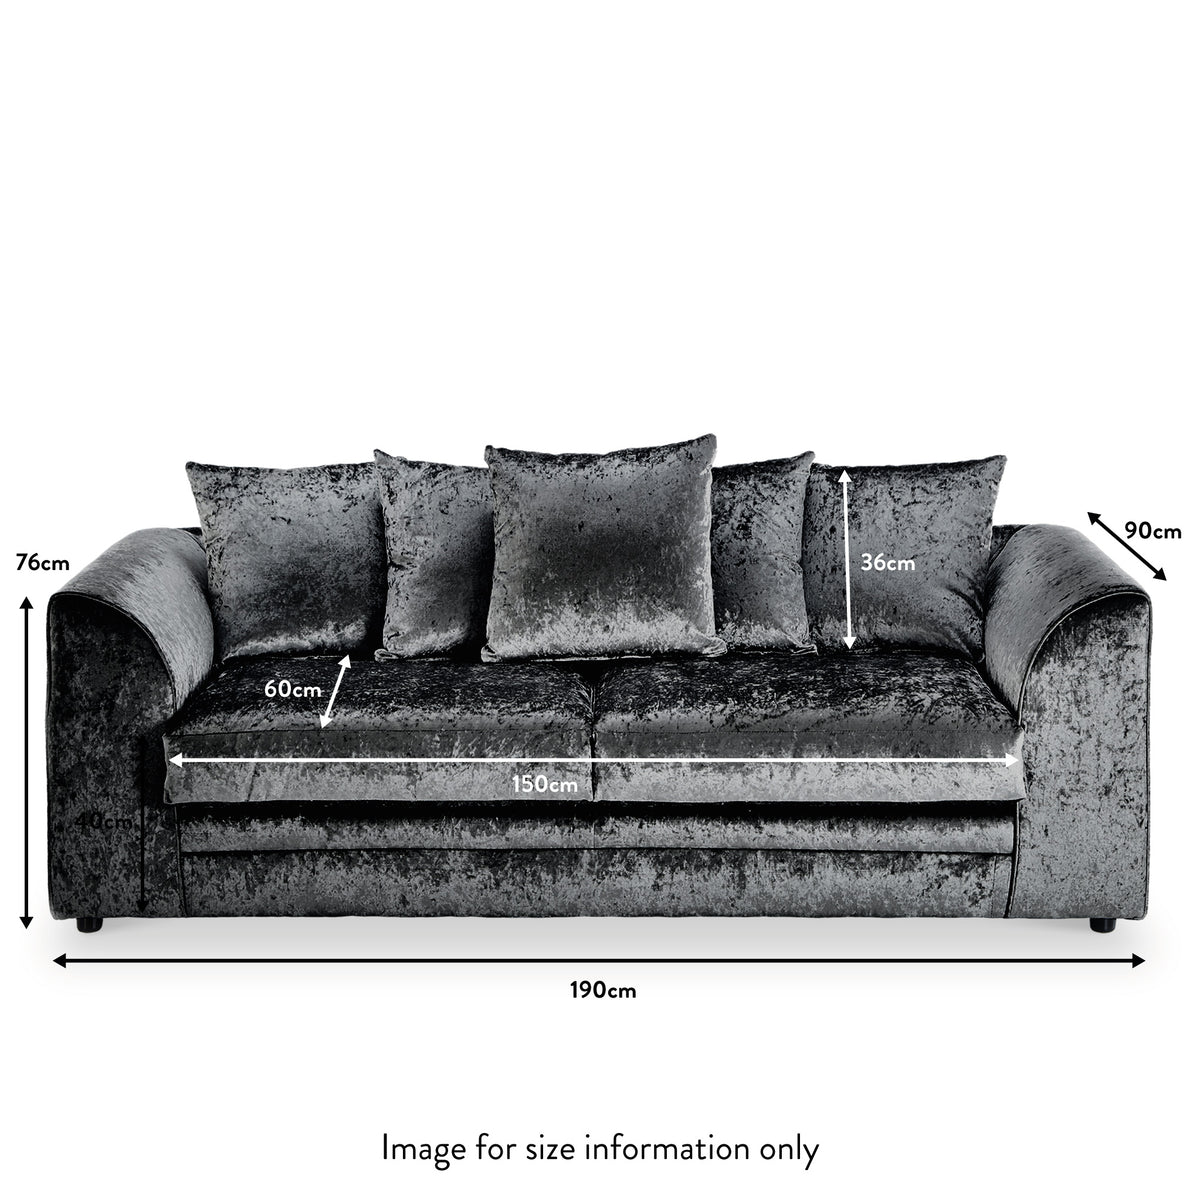 Tamara Black Crushed Velvet 3 Seater Sofa dimensions